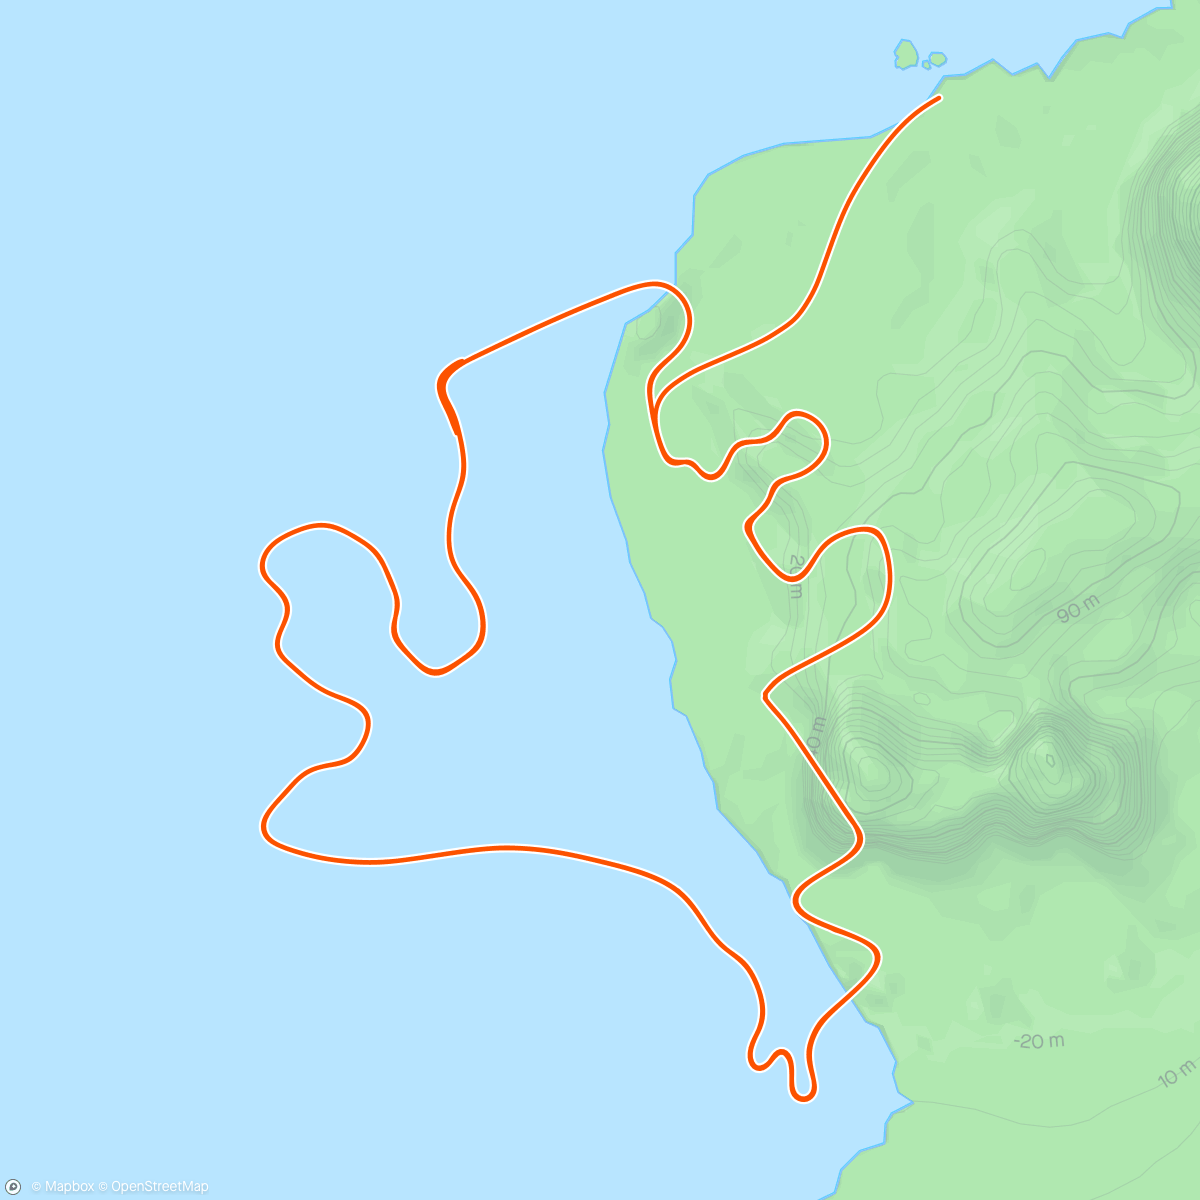 アクティビティ「Zwift - Race: Stage 3: Lap It Up - Seaside Sprint (D) on Seaside Sprint in Watopia」の地図